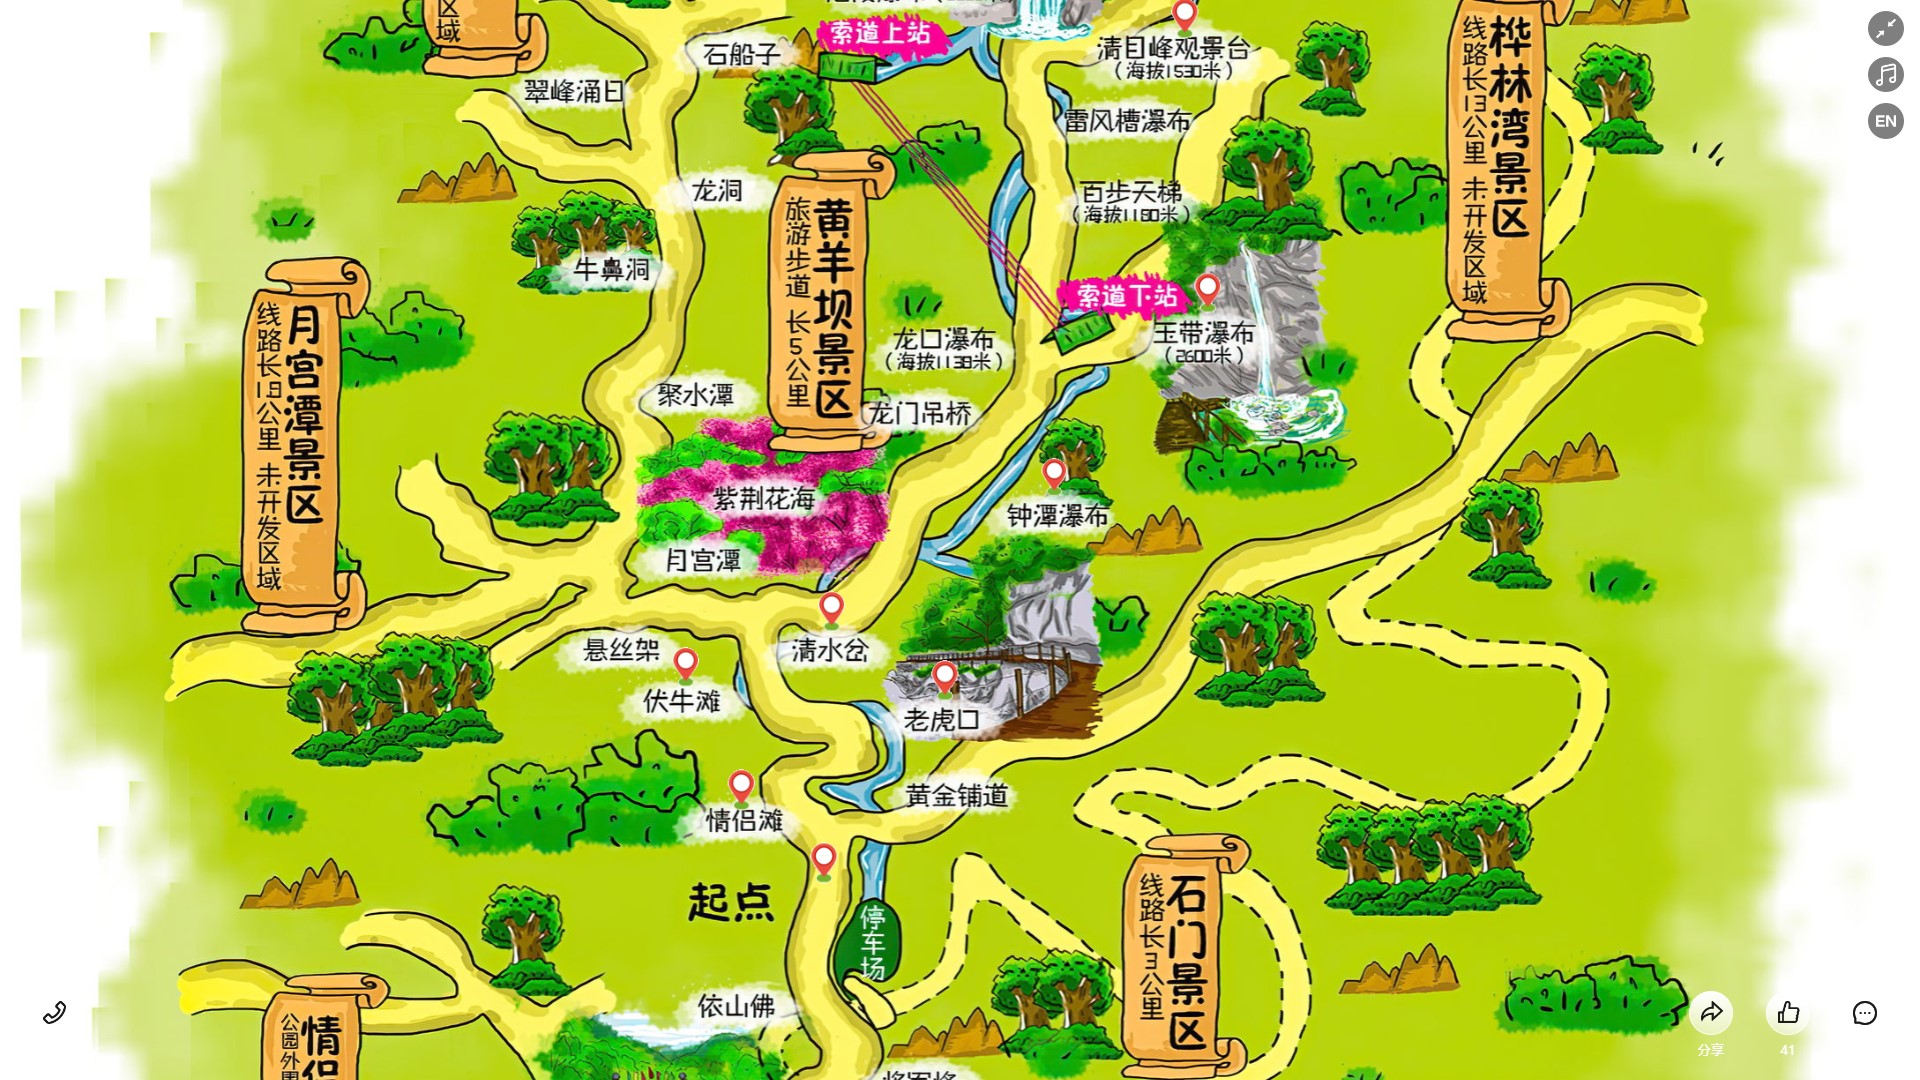 江山景区导览系统